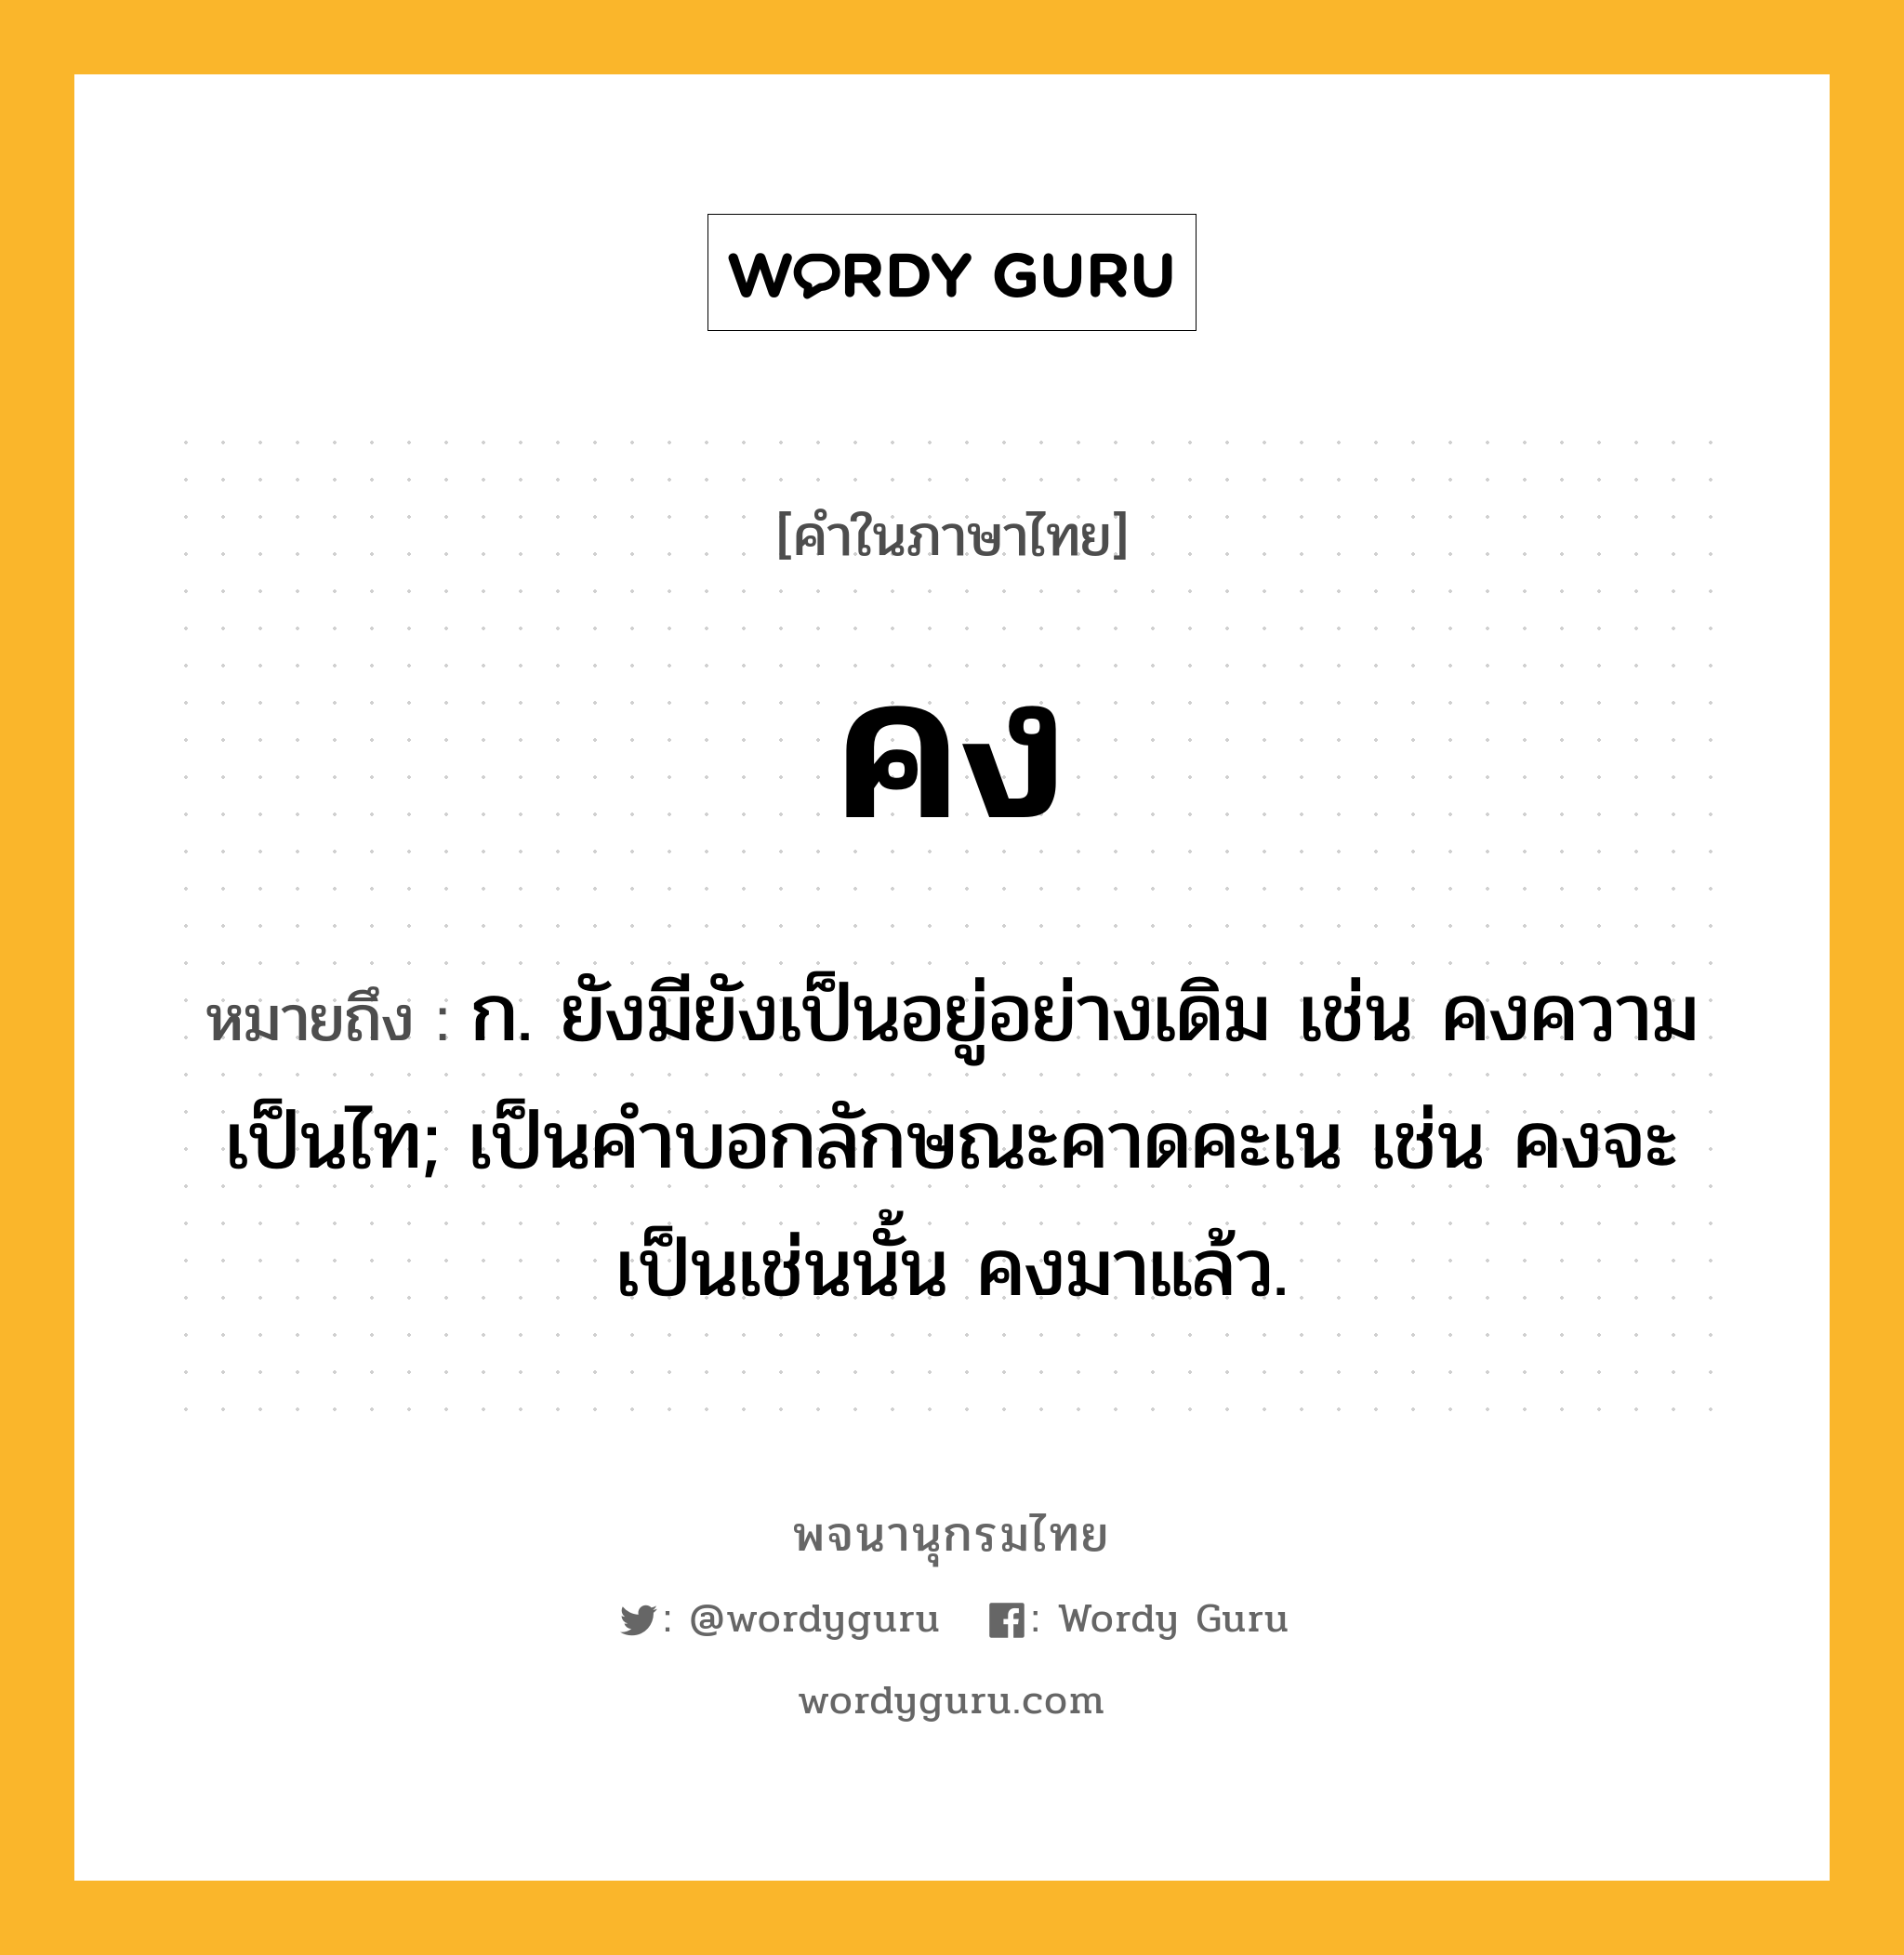 คง หมายถึงอะไร?, คำในภาษาไทย คง หมายถึง ก. ยังมียังเป็นอยู่อย่างเดิม เช่น คงความเป็นไท; เป็นคำบอกลักษณะคาดคะเน เช่น คงจะเป็นเช่นนั้น คงมาแล้ว.